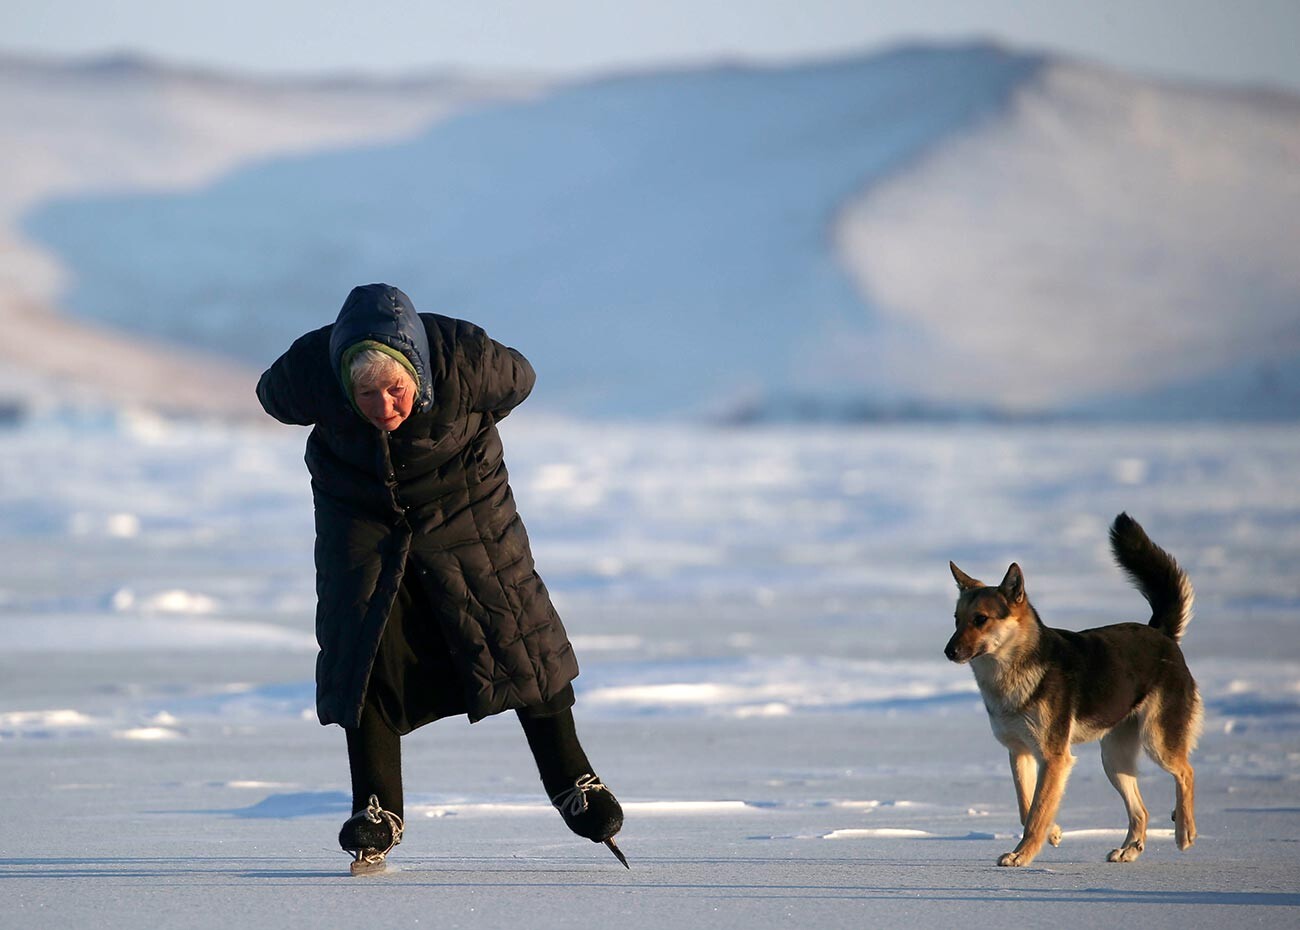 Seit ihrer Kindheit liebt Ljubow Morechodowa Schlittschuhen laufen. Jetzt läuft sie auf dem Baikalsee mit verstellbaren Eisschnellaufschienen aus dem Jahr 1945, die sie direkt an die Filzstiefel bindet.